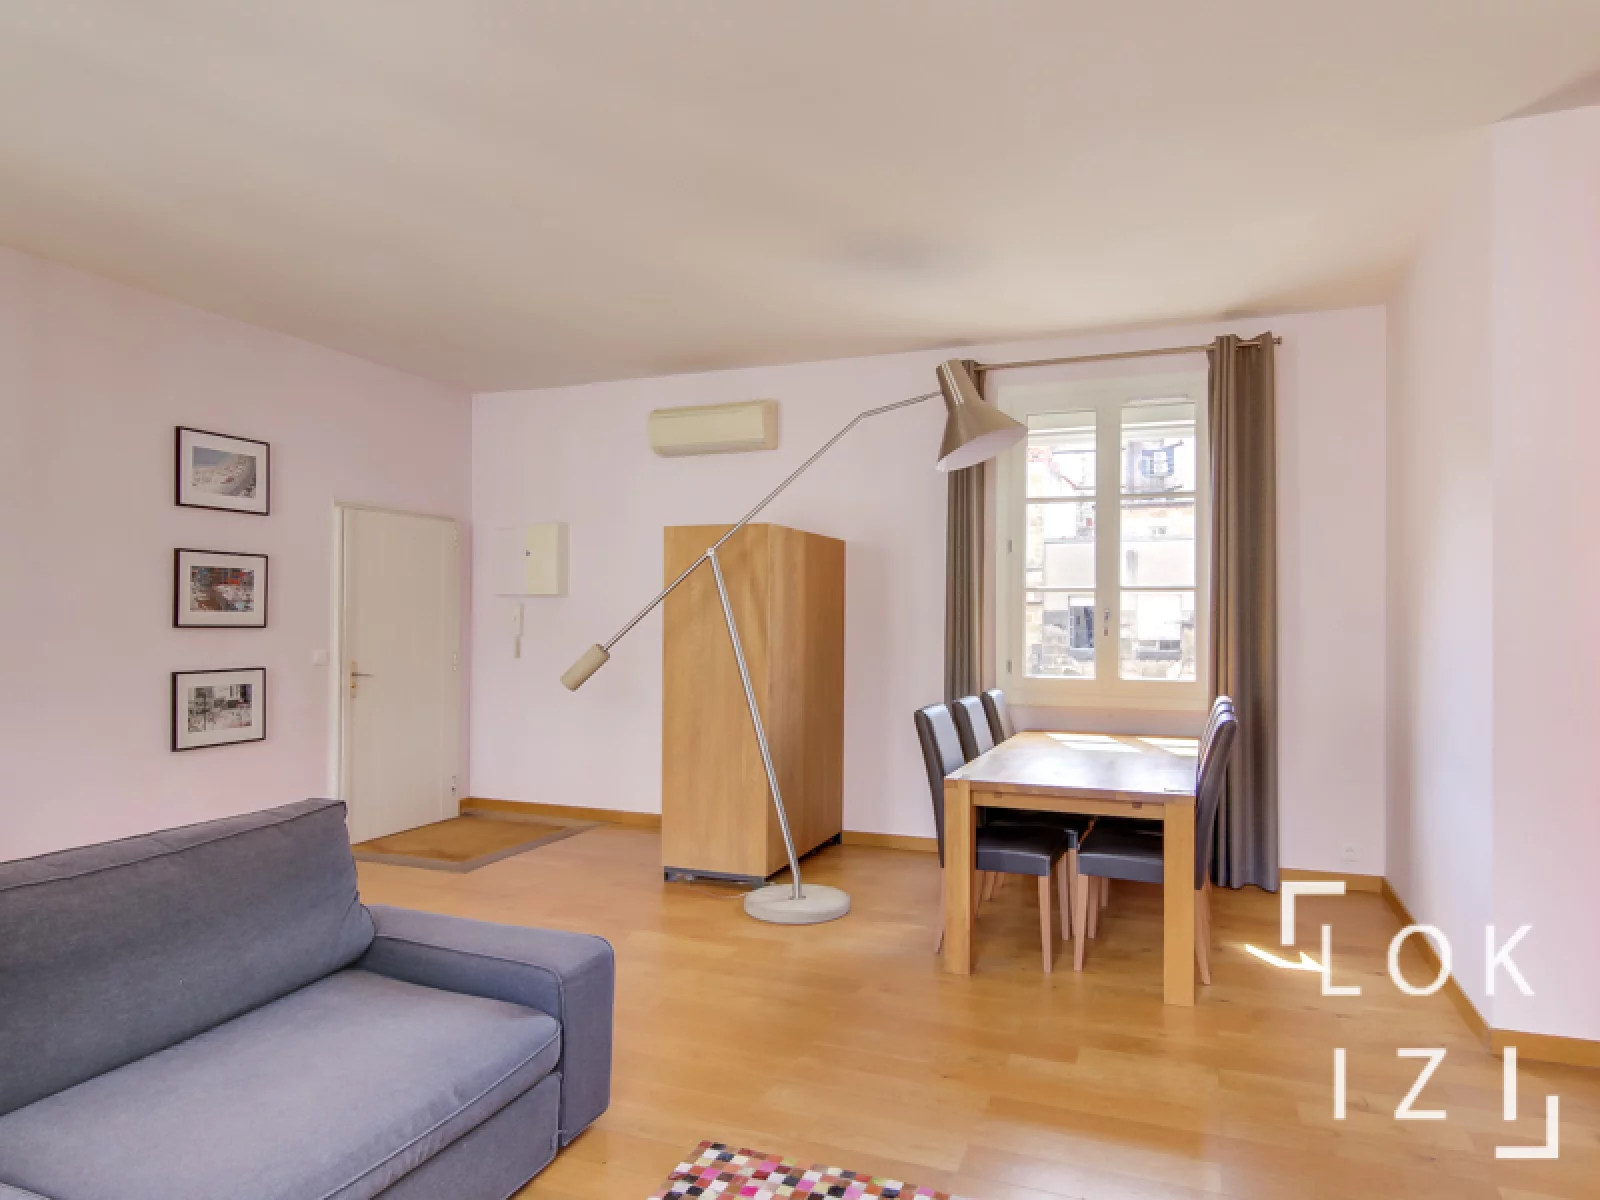 Location appartement meublé 70m² (Bordeaux centre - Triangle d'or)